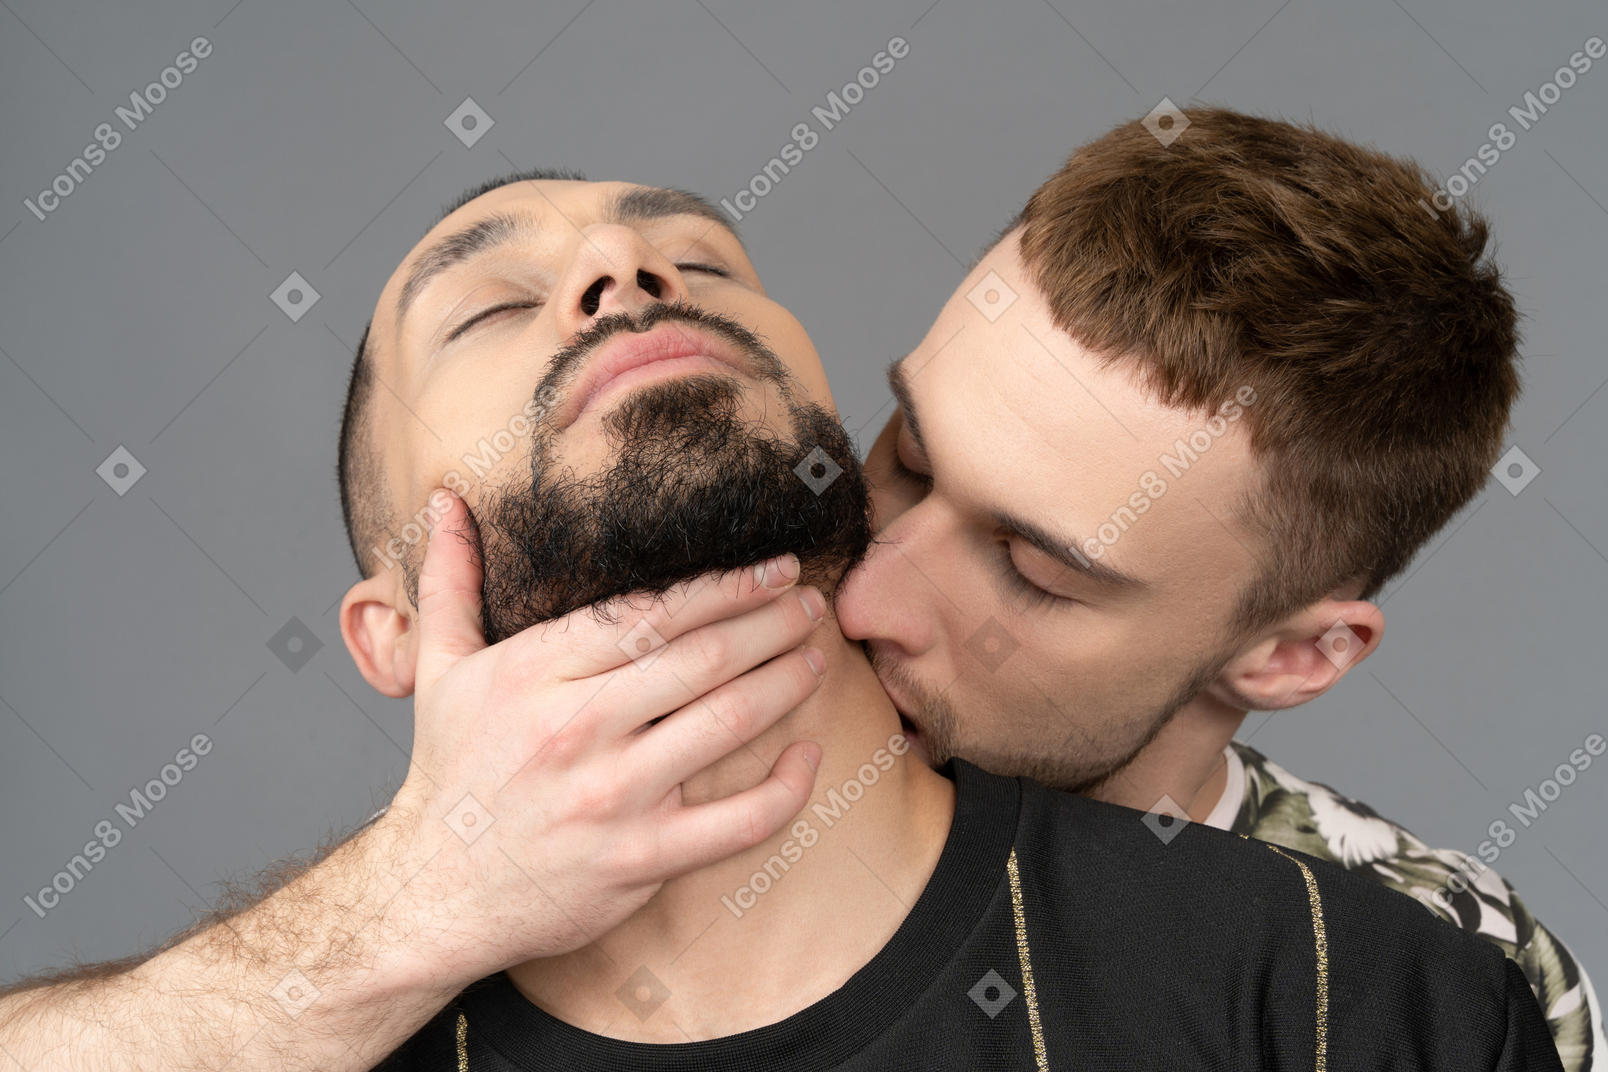 Primo piano di un uomo che bacia appassionatamente il collo del ragazzo